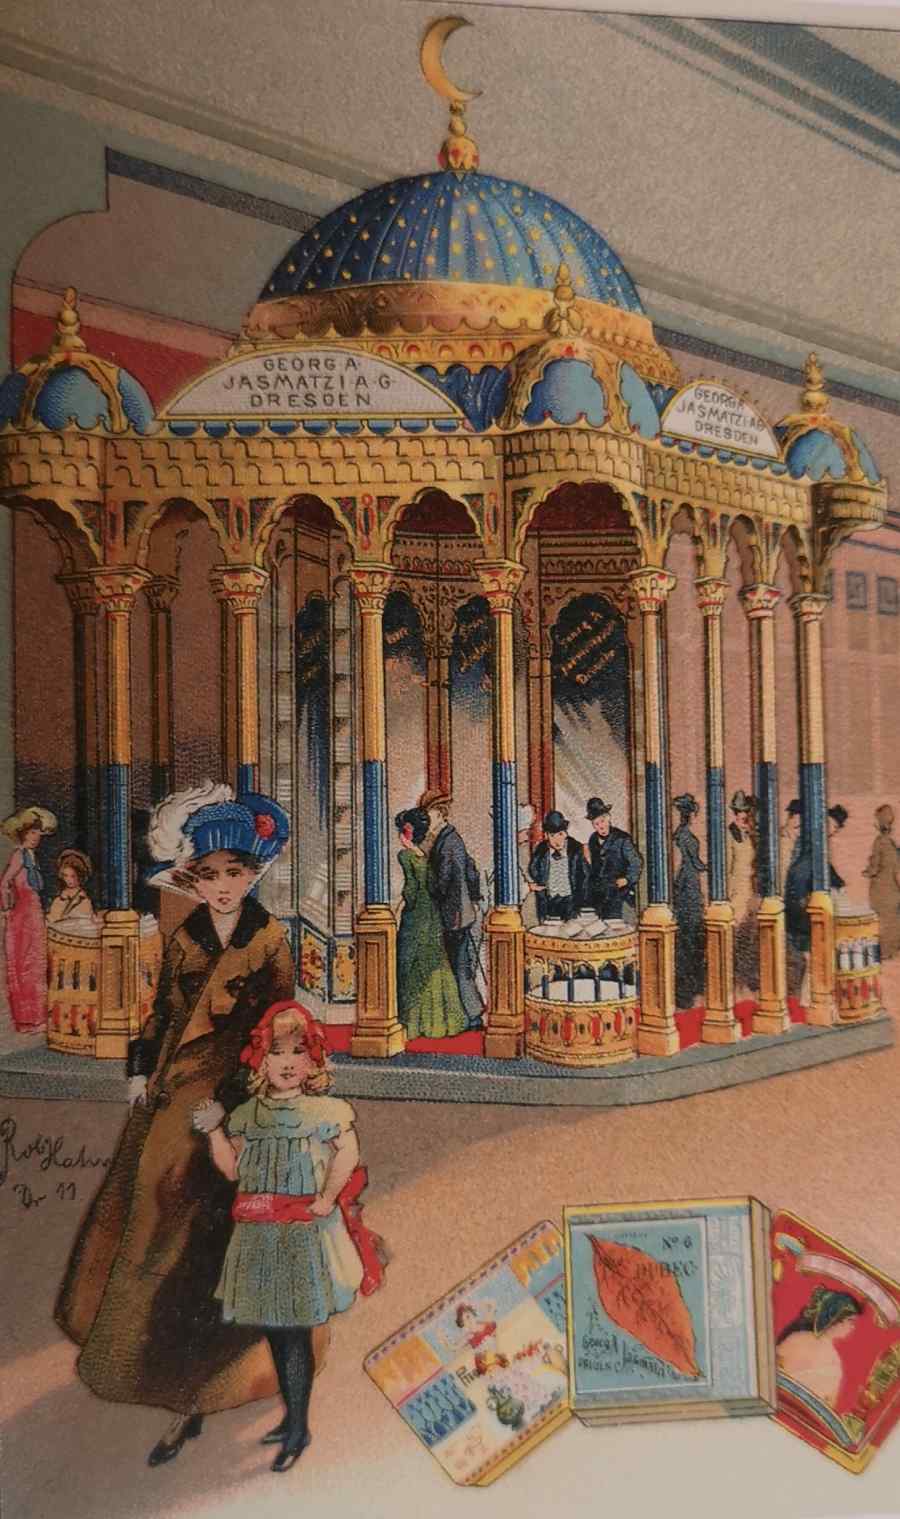 Diese Postkarte zeigt den Pavillon der Jasmatzi-Tabakfabrik auf der Internationalen hygieneausstellung 1911 in Dresden. Quelle: Stadtmuseum Dresden, Repro aus: Tabakrausch an der Elbe